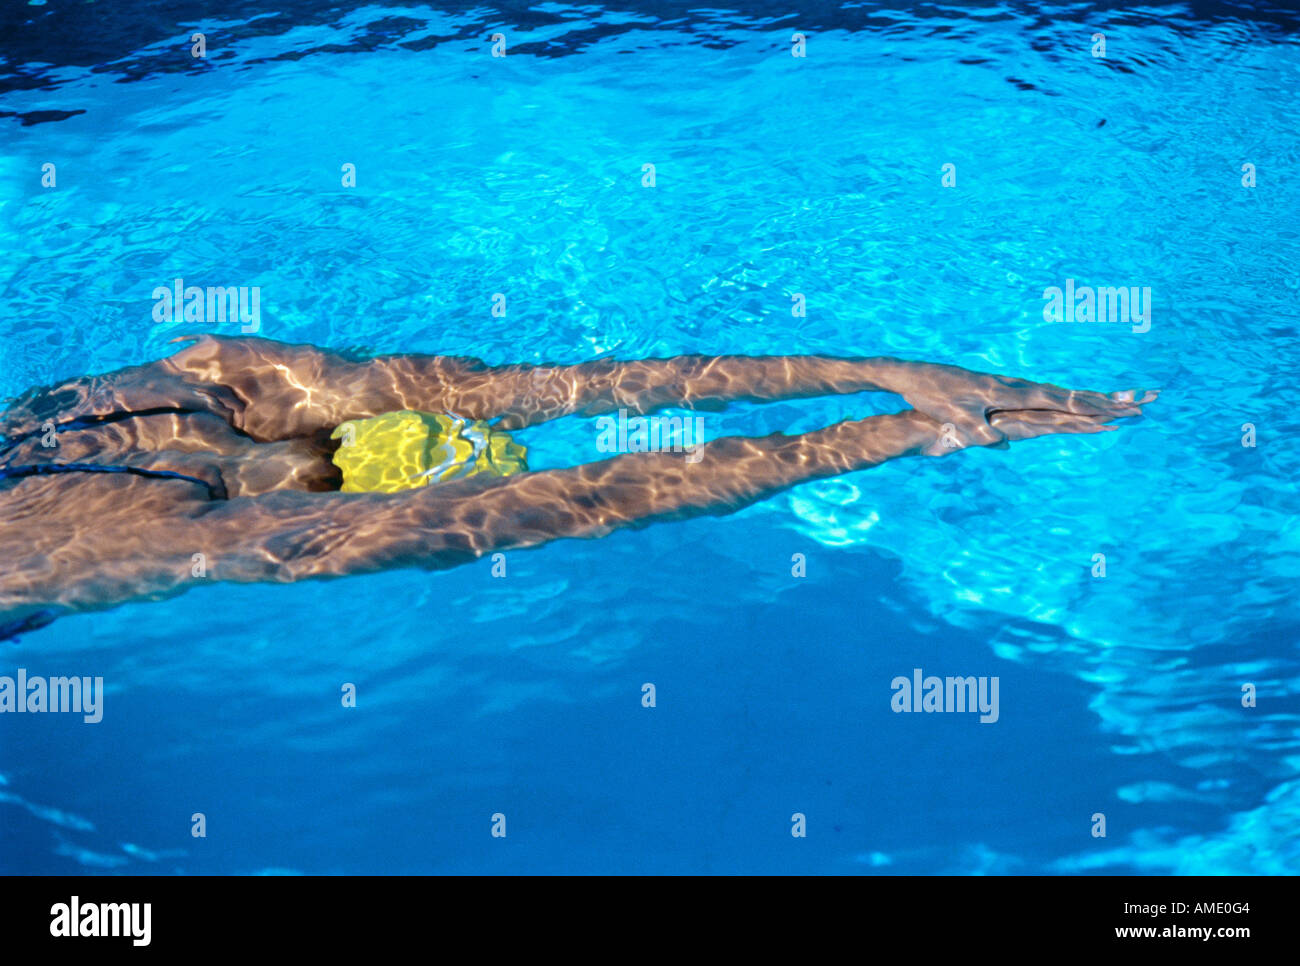 Woman Swimming in Pool Stock Photo